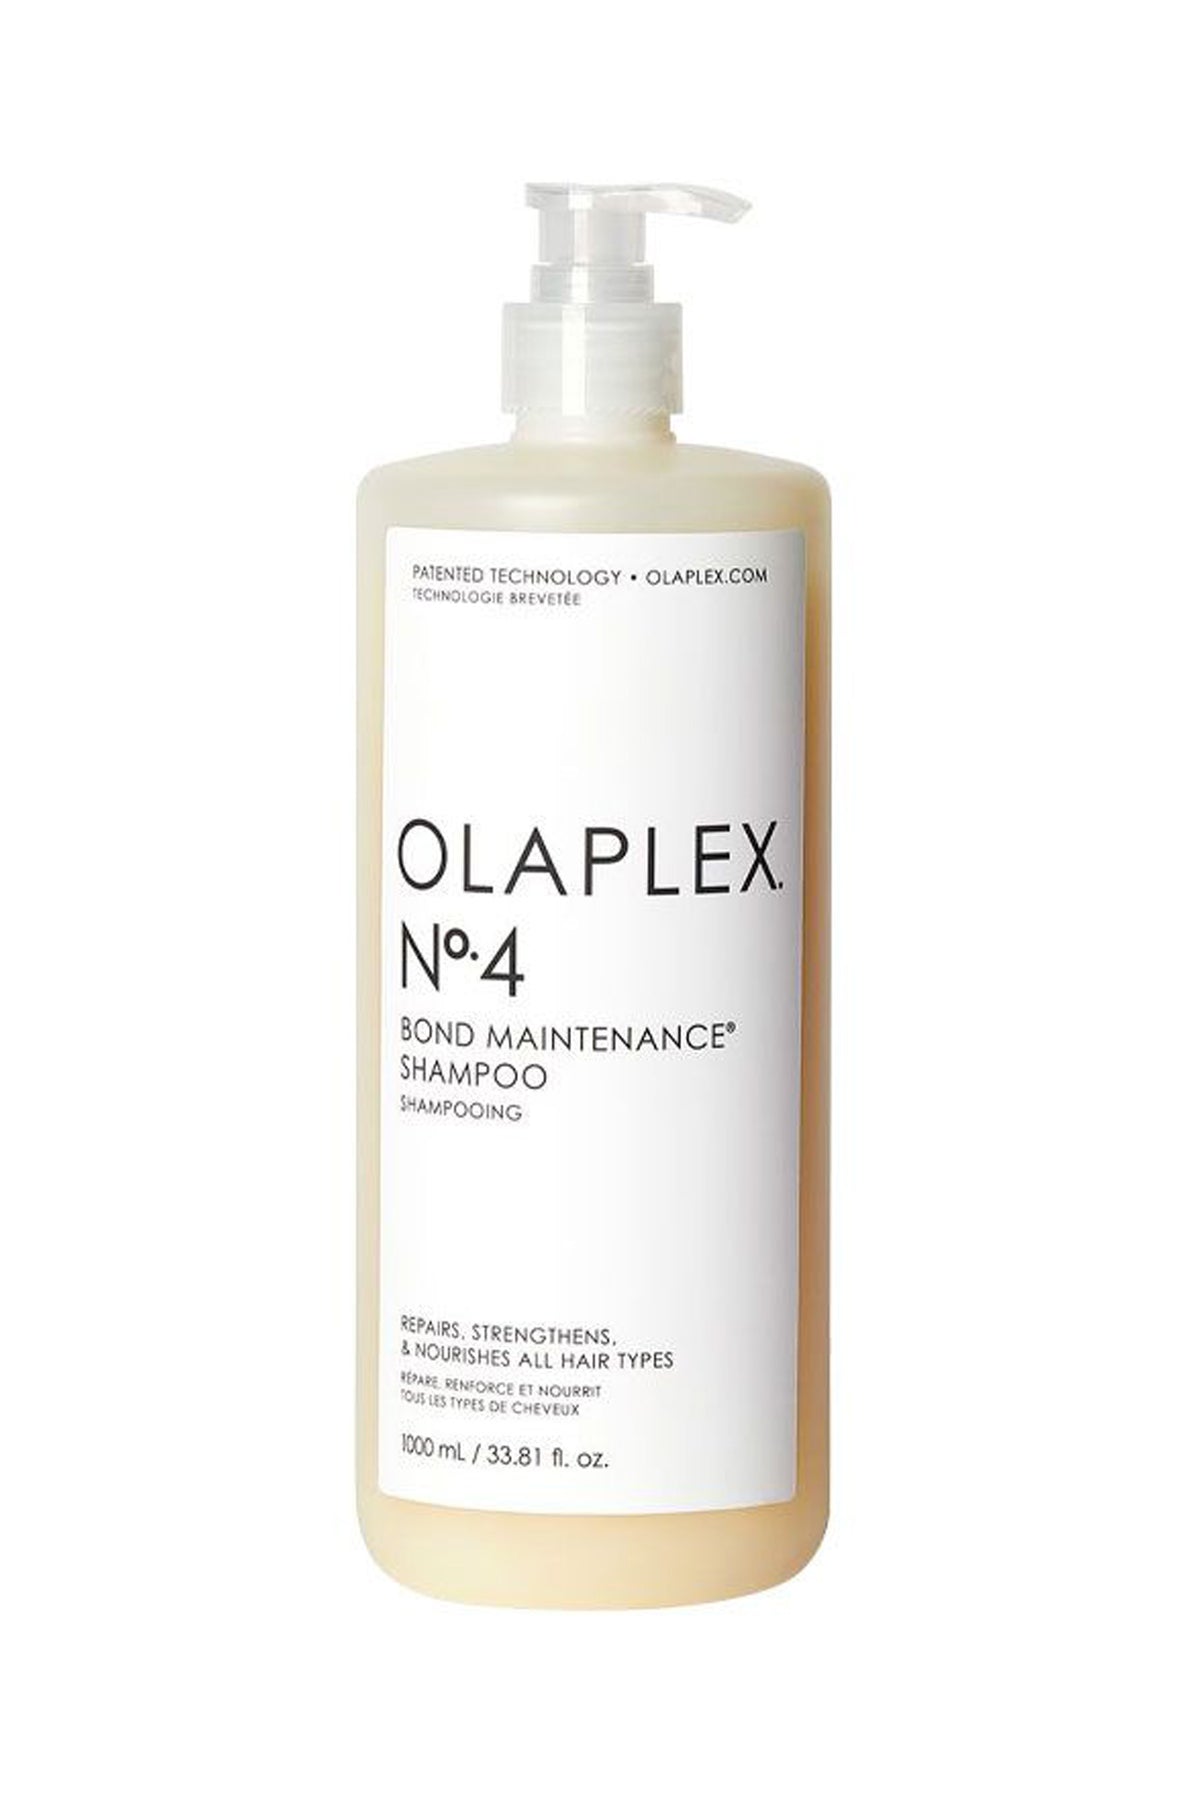 olaplex 1 litre shampoo